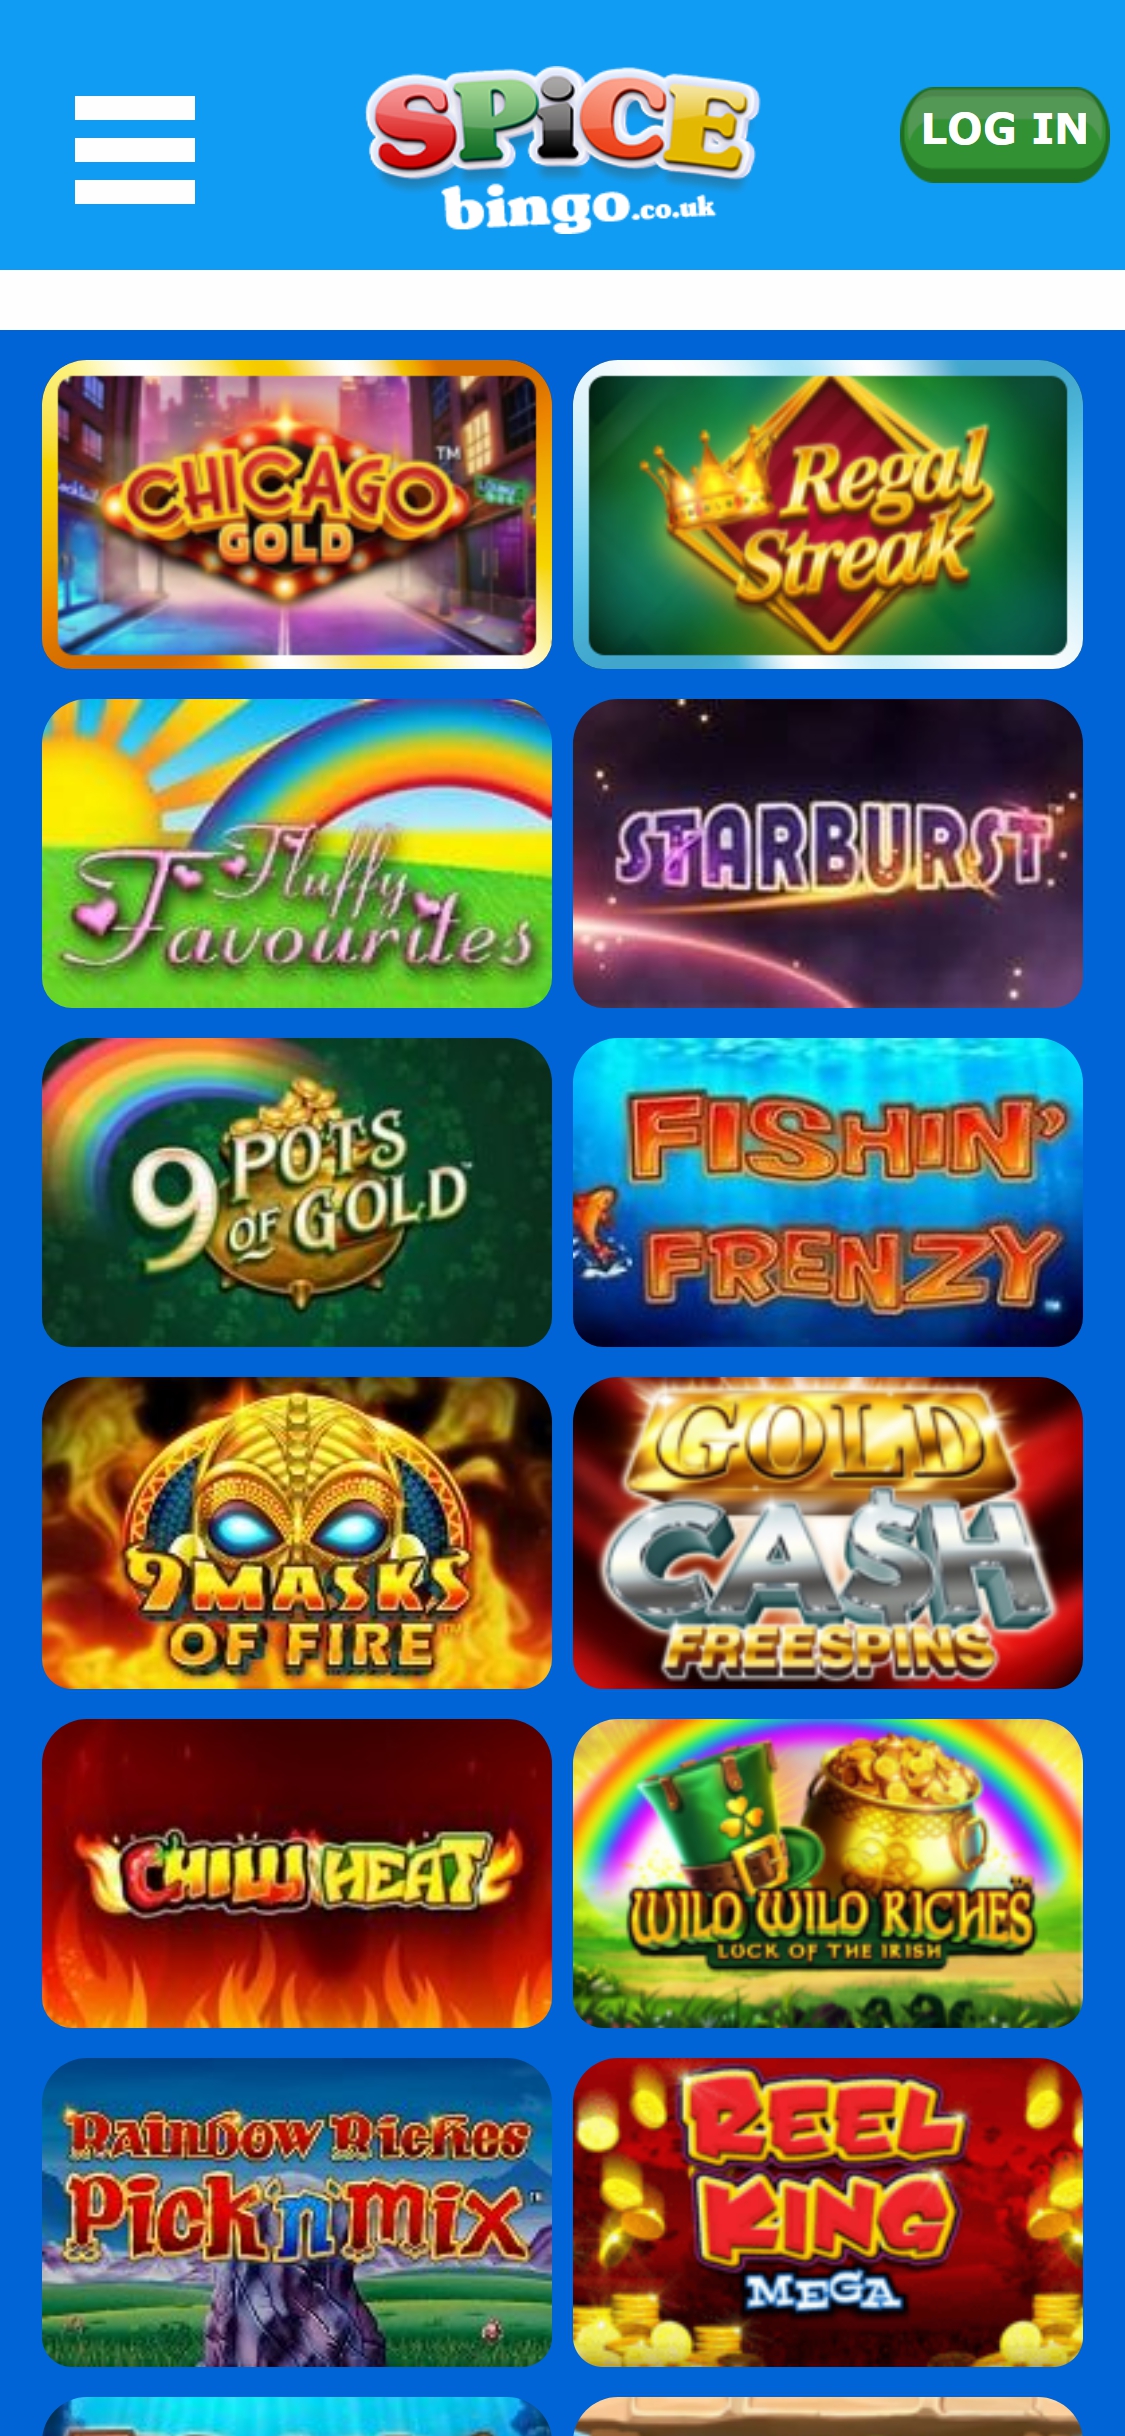 Spice Bingo Casino Mobile Games Review